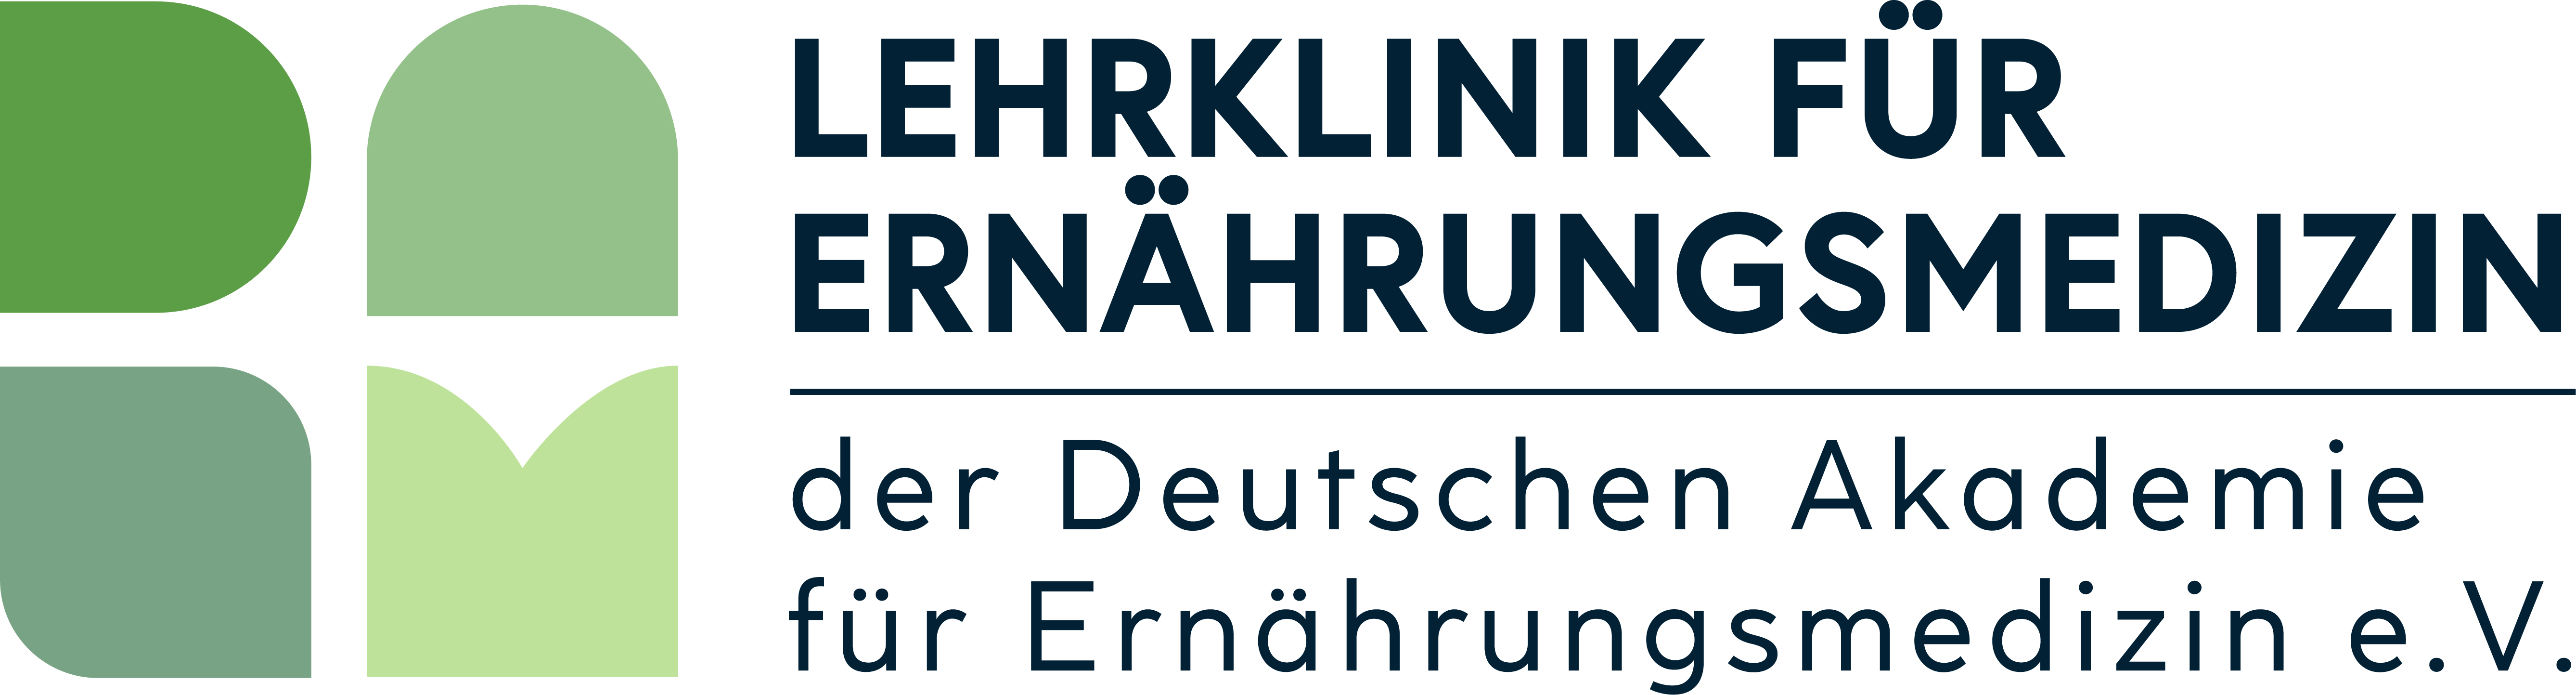 Logo der Deutschen Akademie für Ernährungsmedizin e.V.